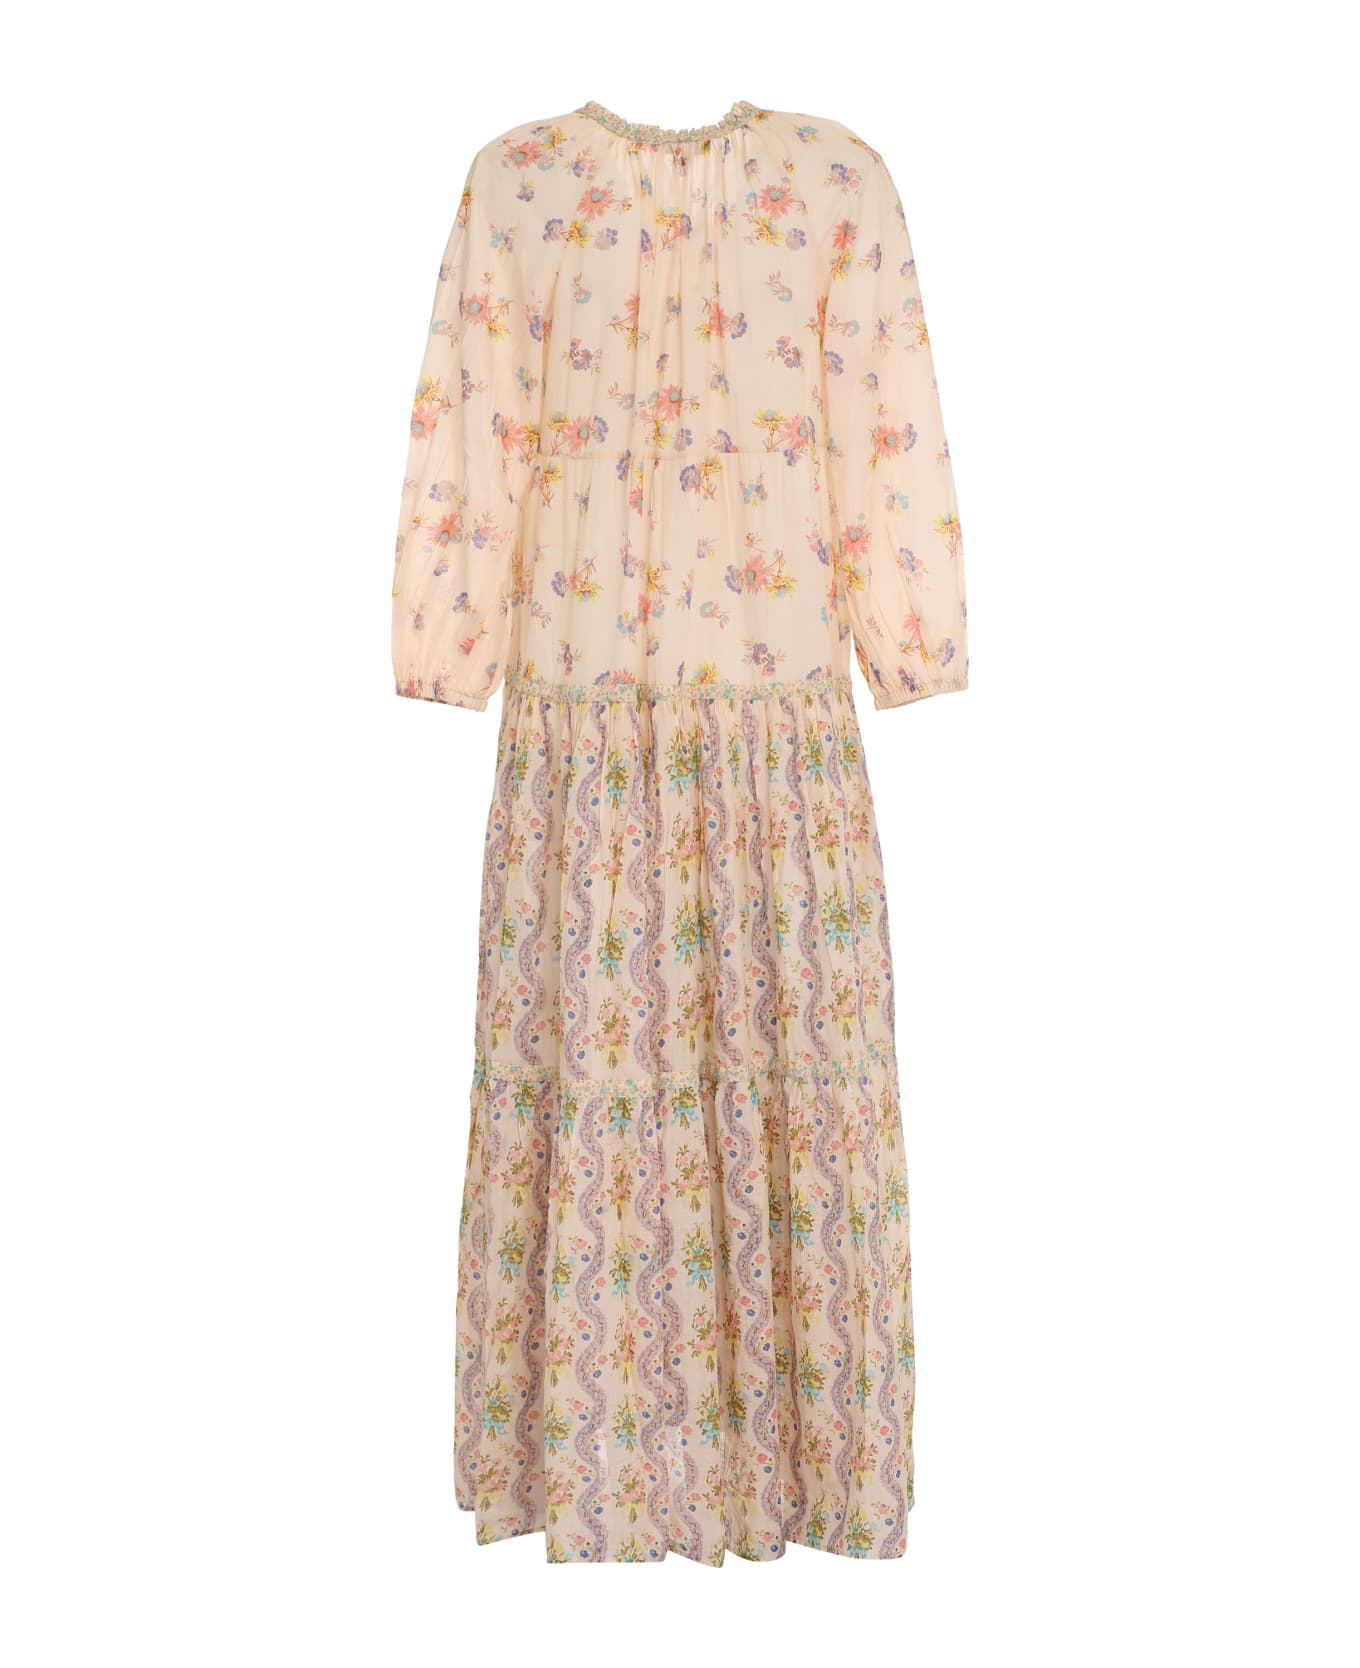 Anjuna Lorella Printed Cotton Dress - Multicolor